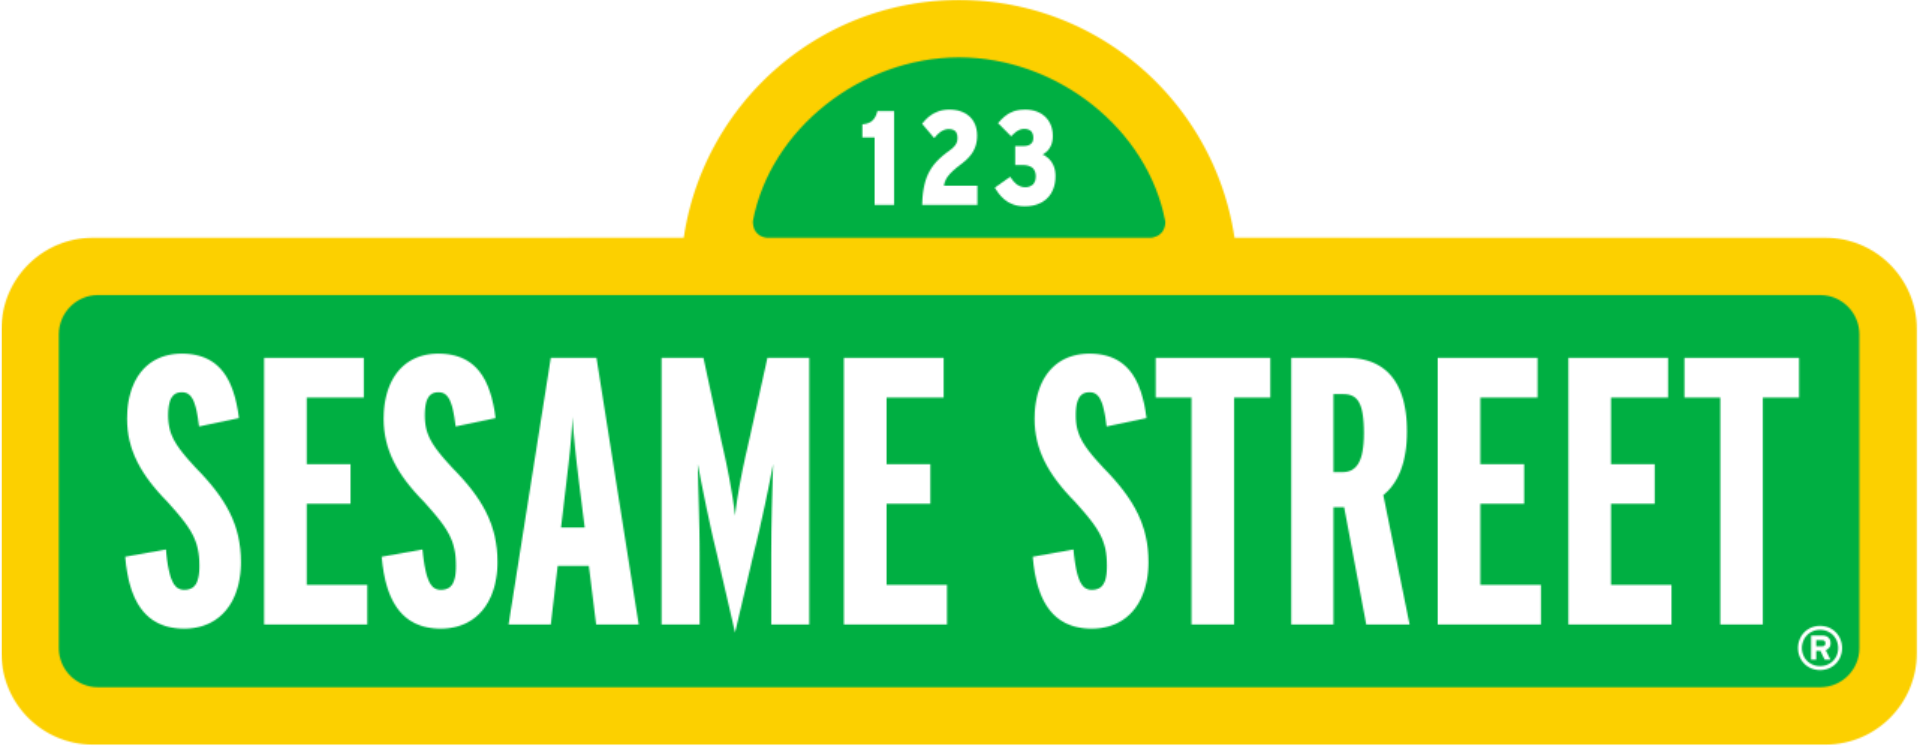 Sesame_Street_logo